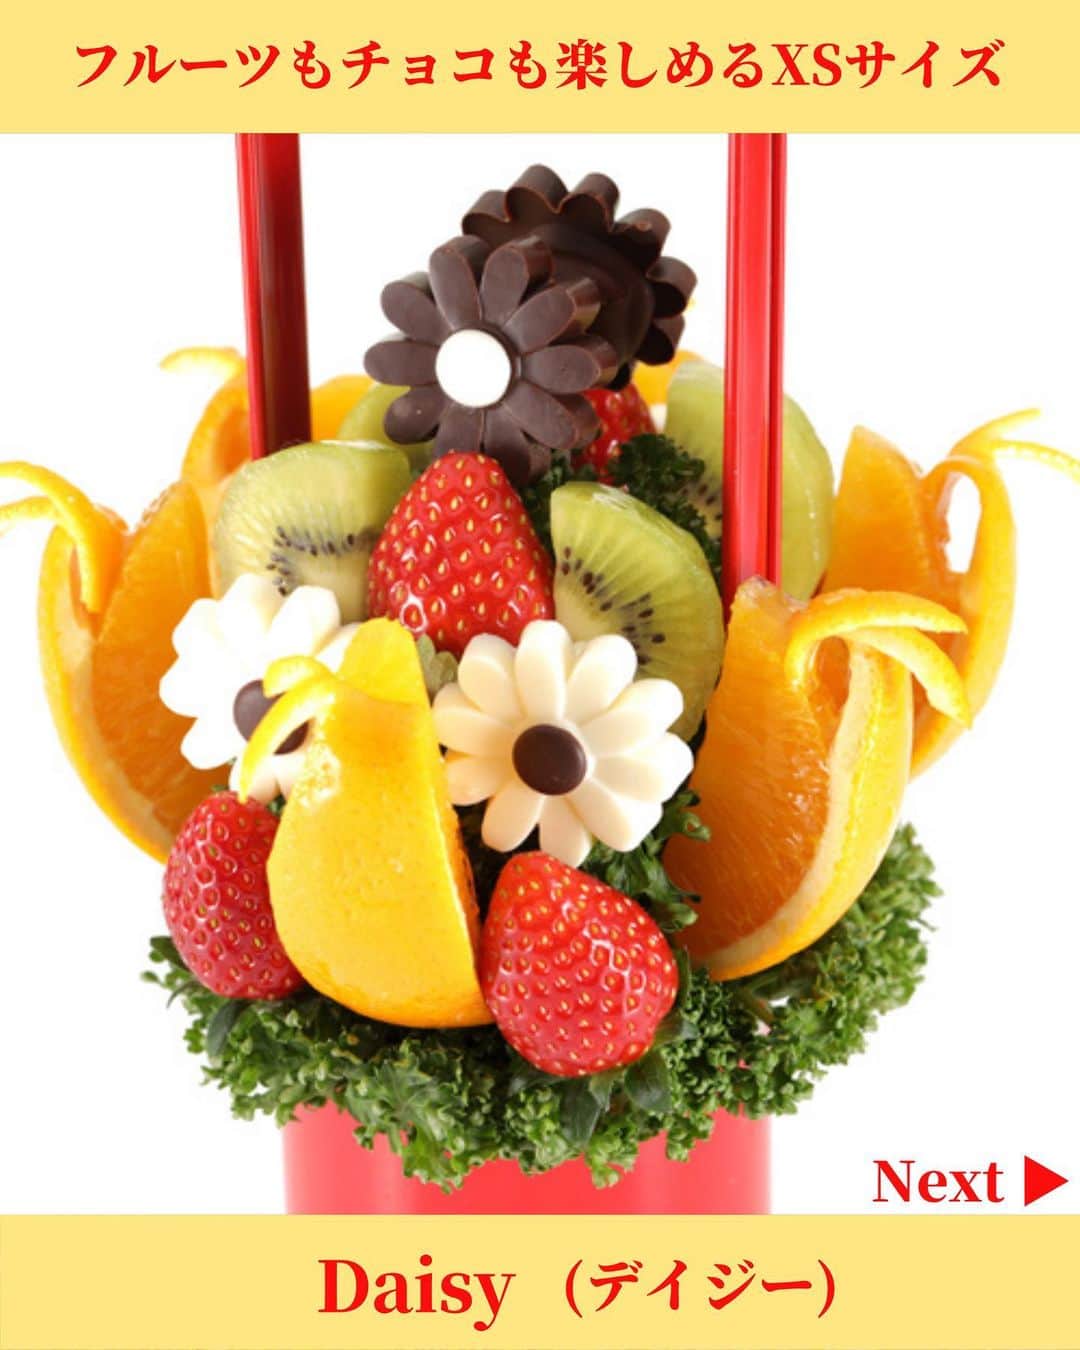 Fruit-bouquets.comのインスタグラム：「【フルーツブーケ】  Daisy (デイジー)  フルーツとチョコレートを両方楽しめる定番商品🌼  1〜2名から楽しめるXSサイズで初めてフルーツブーケを注文される方にも大人気の商品です✨  #フルーツブーケ #フルーツギフト #フルーツケーキ  #誕生日プレゼント #誕生日ケーキ  #お取り寄せスイーツ #お取り寄せグルメ  #いちご #いちごスイーツ #いちごケーキ  #インスタ映えスイーツ #スイーツ  #スイーツ好きな人と繋がりたい #スイーツ女子  .」